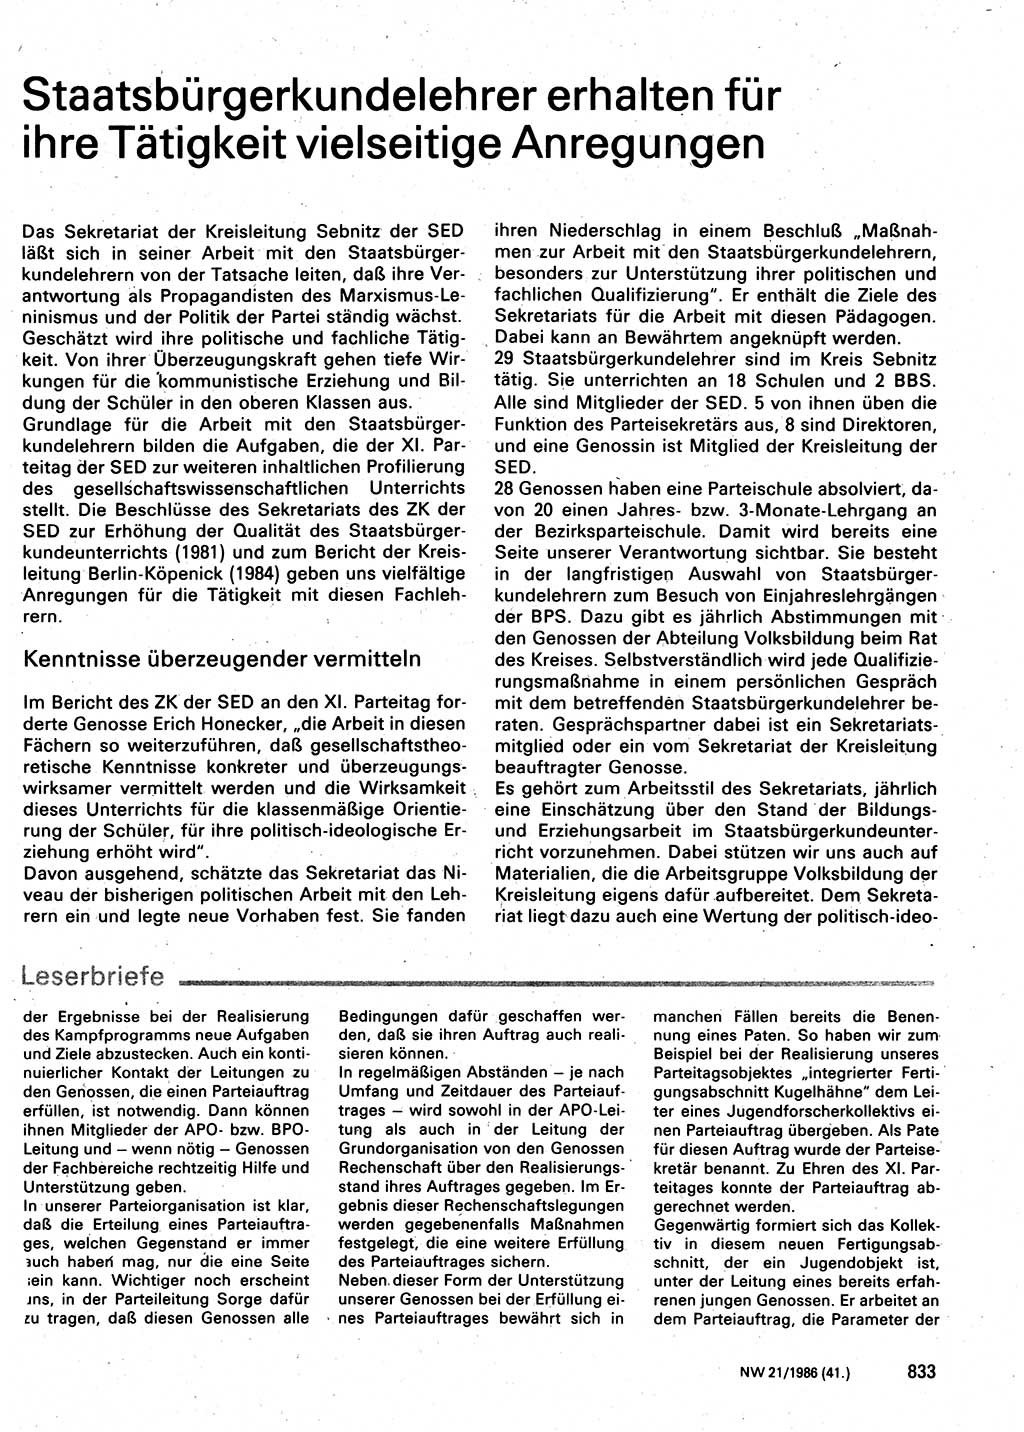 Neuer Weg (NW), Organ des Zentralkomitees (ZK) der SED (Sozialistische Einheitspartei Deutschlands) für Fragen des Parteilebens, 41. Jahrgang [Deutsche Demokratische Republik (DDR)] 1986, Seite 833 (NW ZK SED DDR 1986, S. 833)